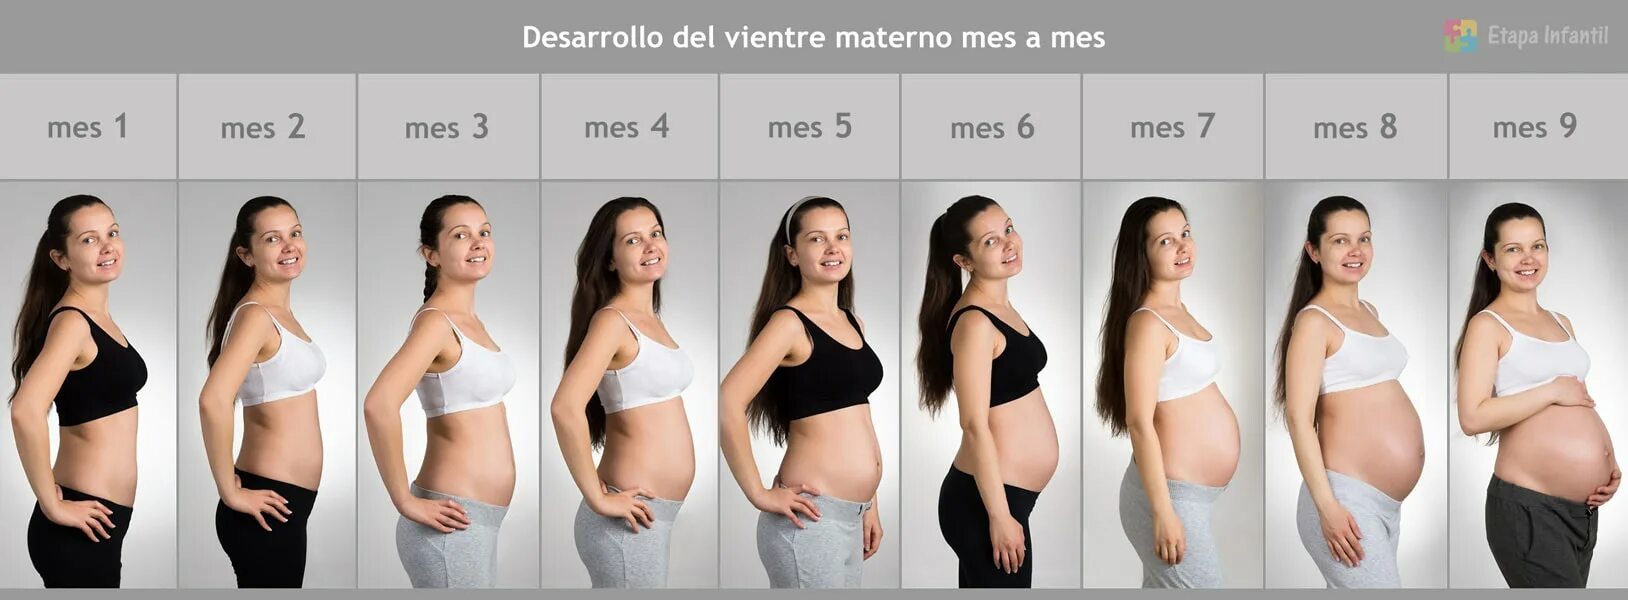 Живот у беременных по месяцам. Живот беременной женщины по неделям. Животики беременных по месяцам. Живот беременной по неделям у полных.